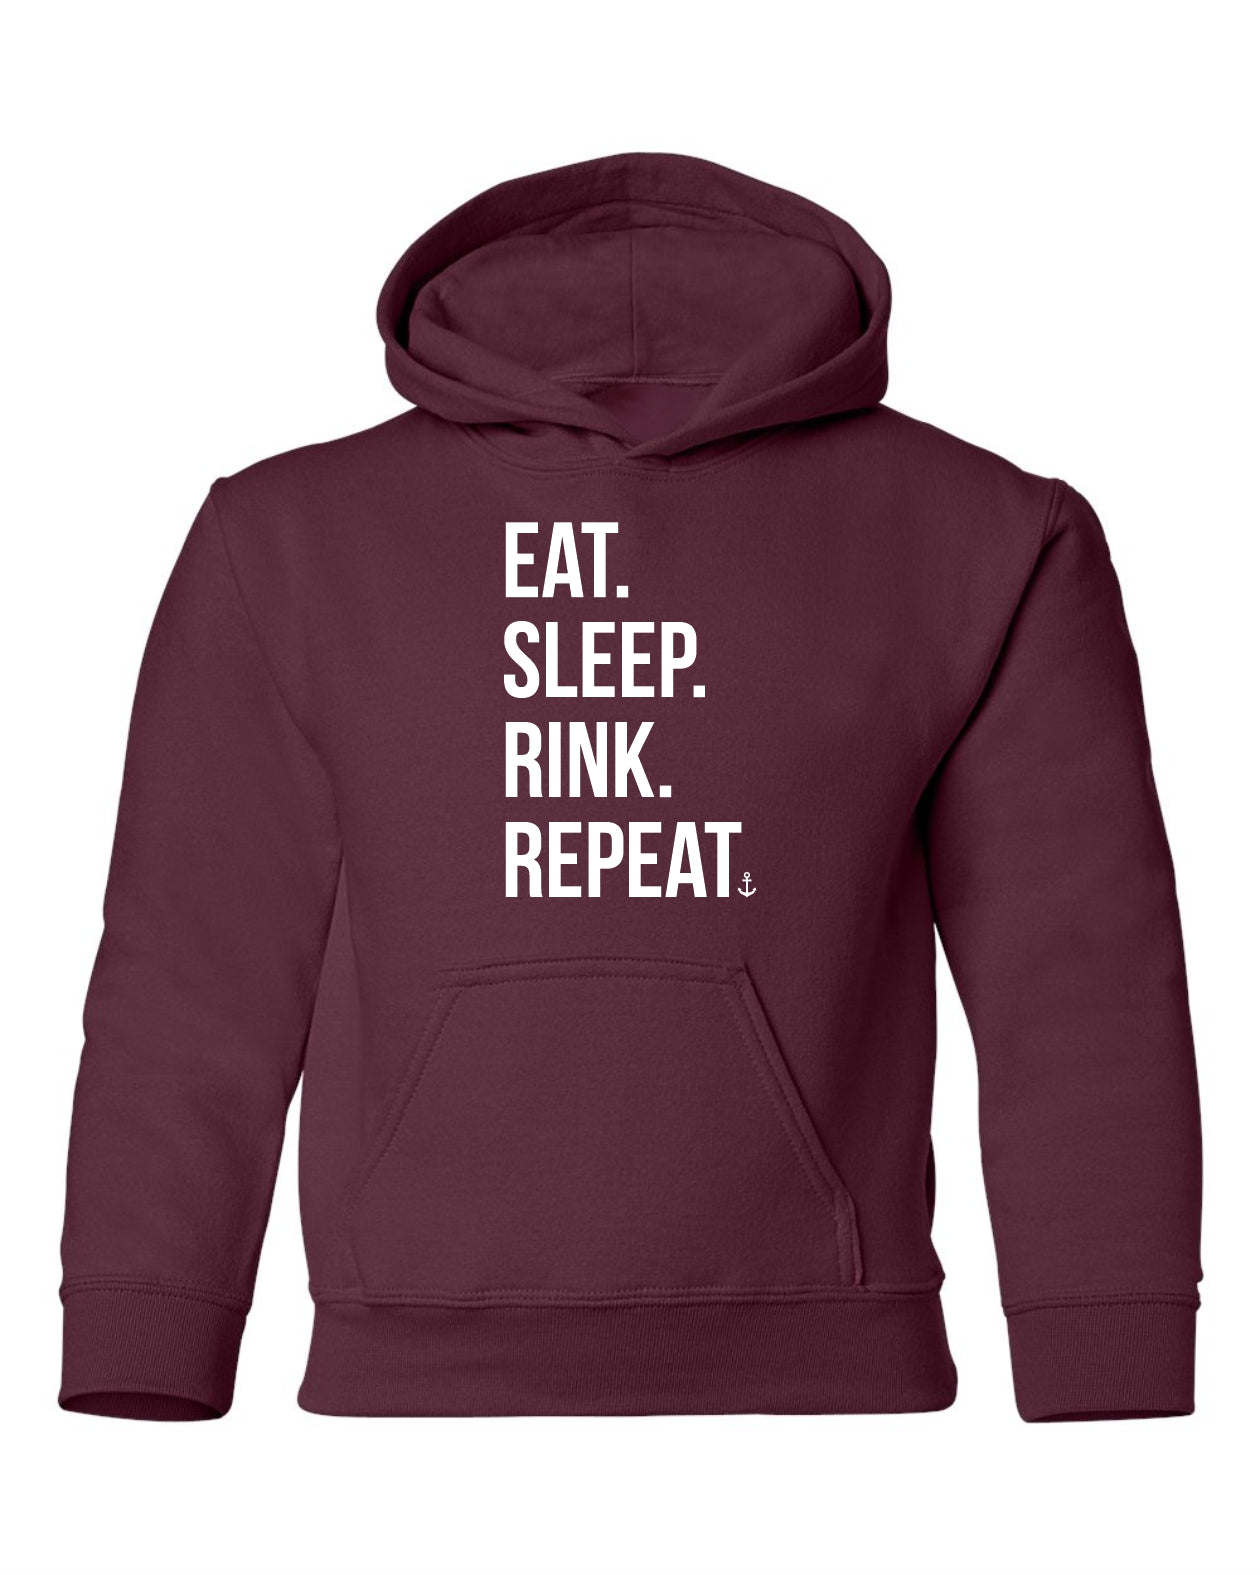 "Eat. Sleep. Rink. Repeat." Youth Hoodie